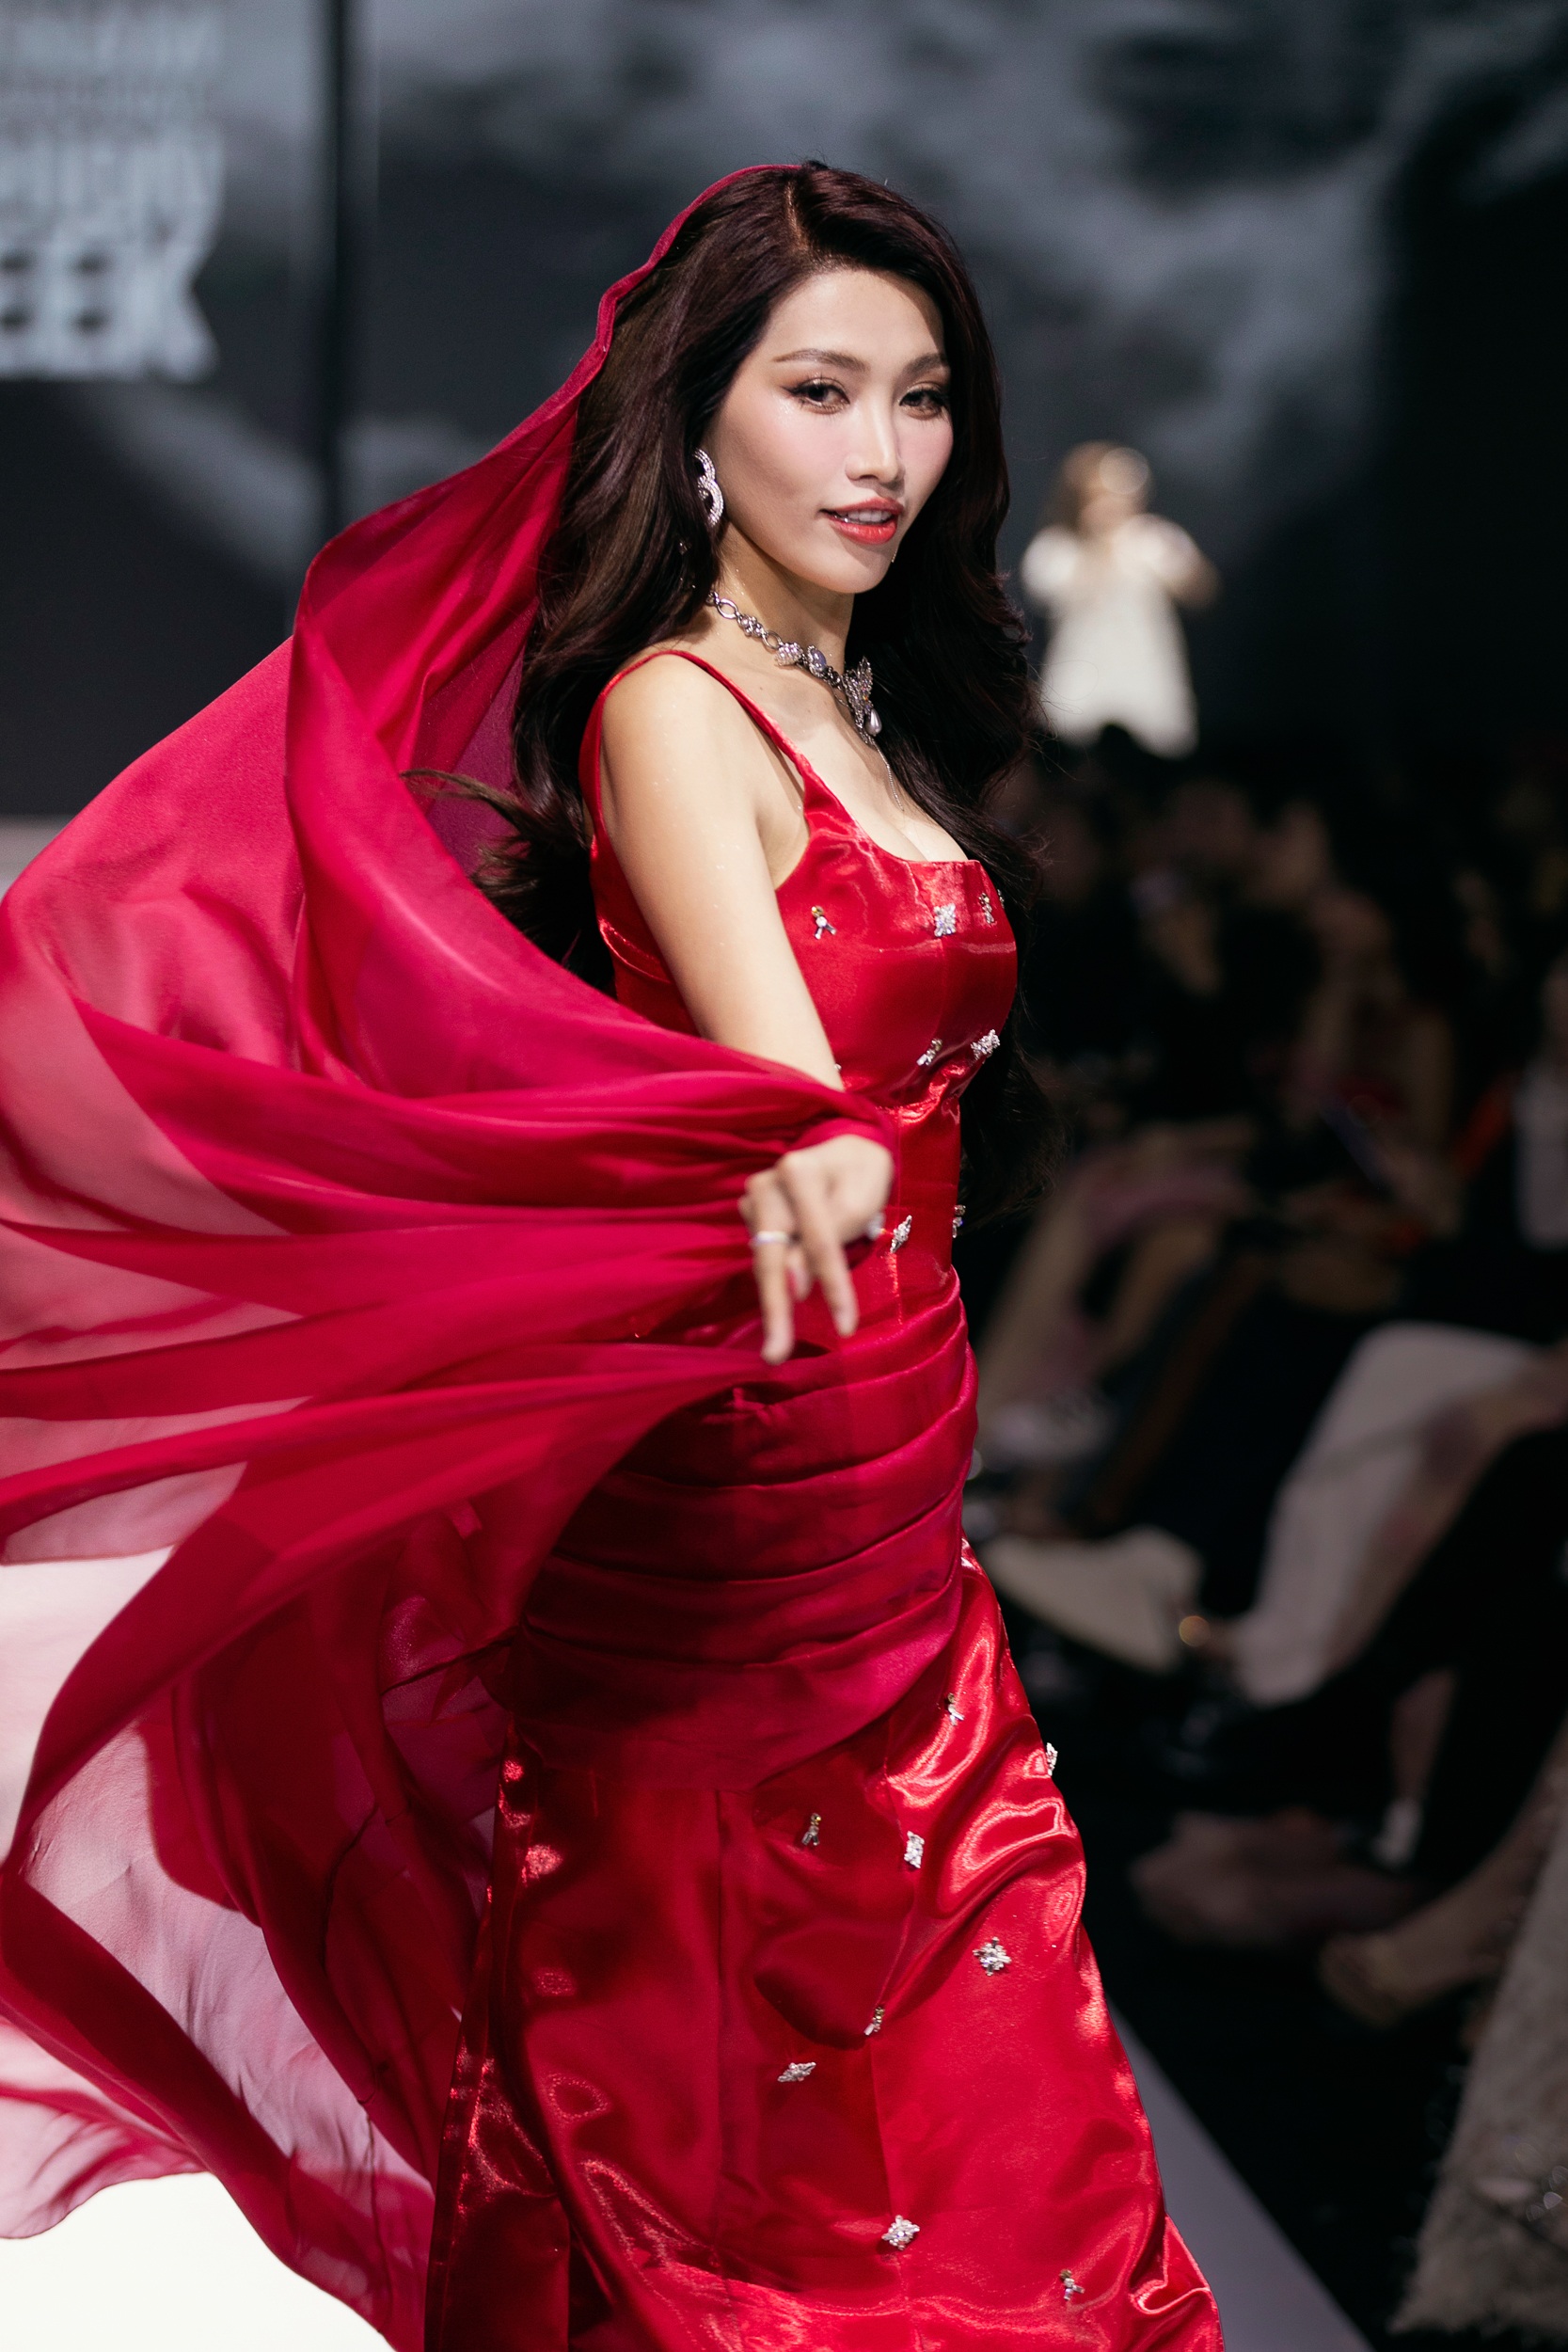 HHen Niê, Quỳnh Châu catwalk trong trang phục cảm hứng mây trời - 5